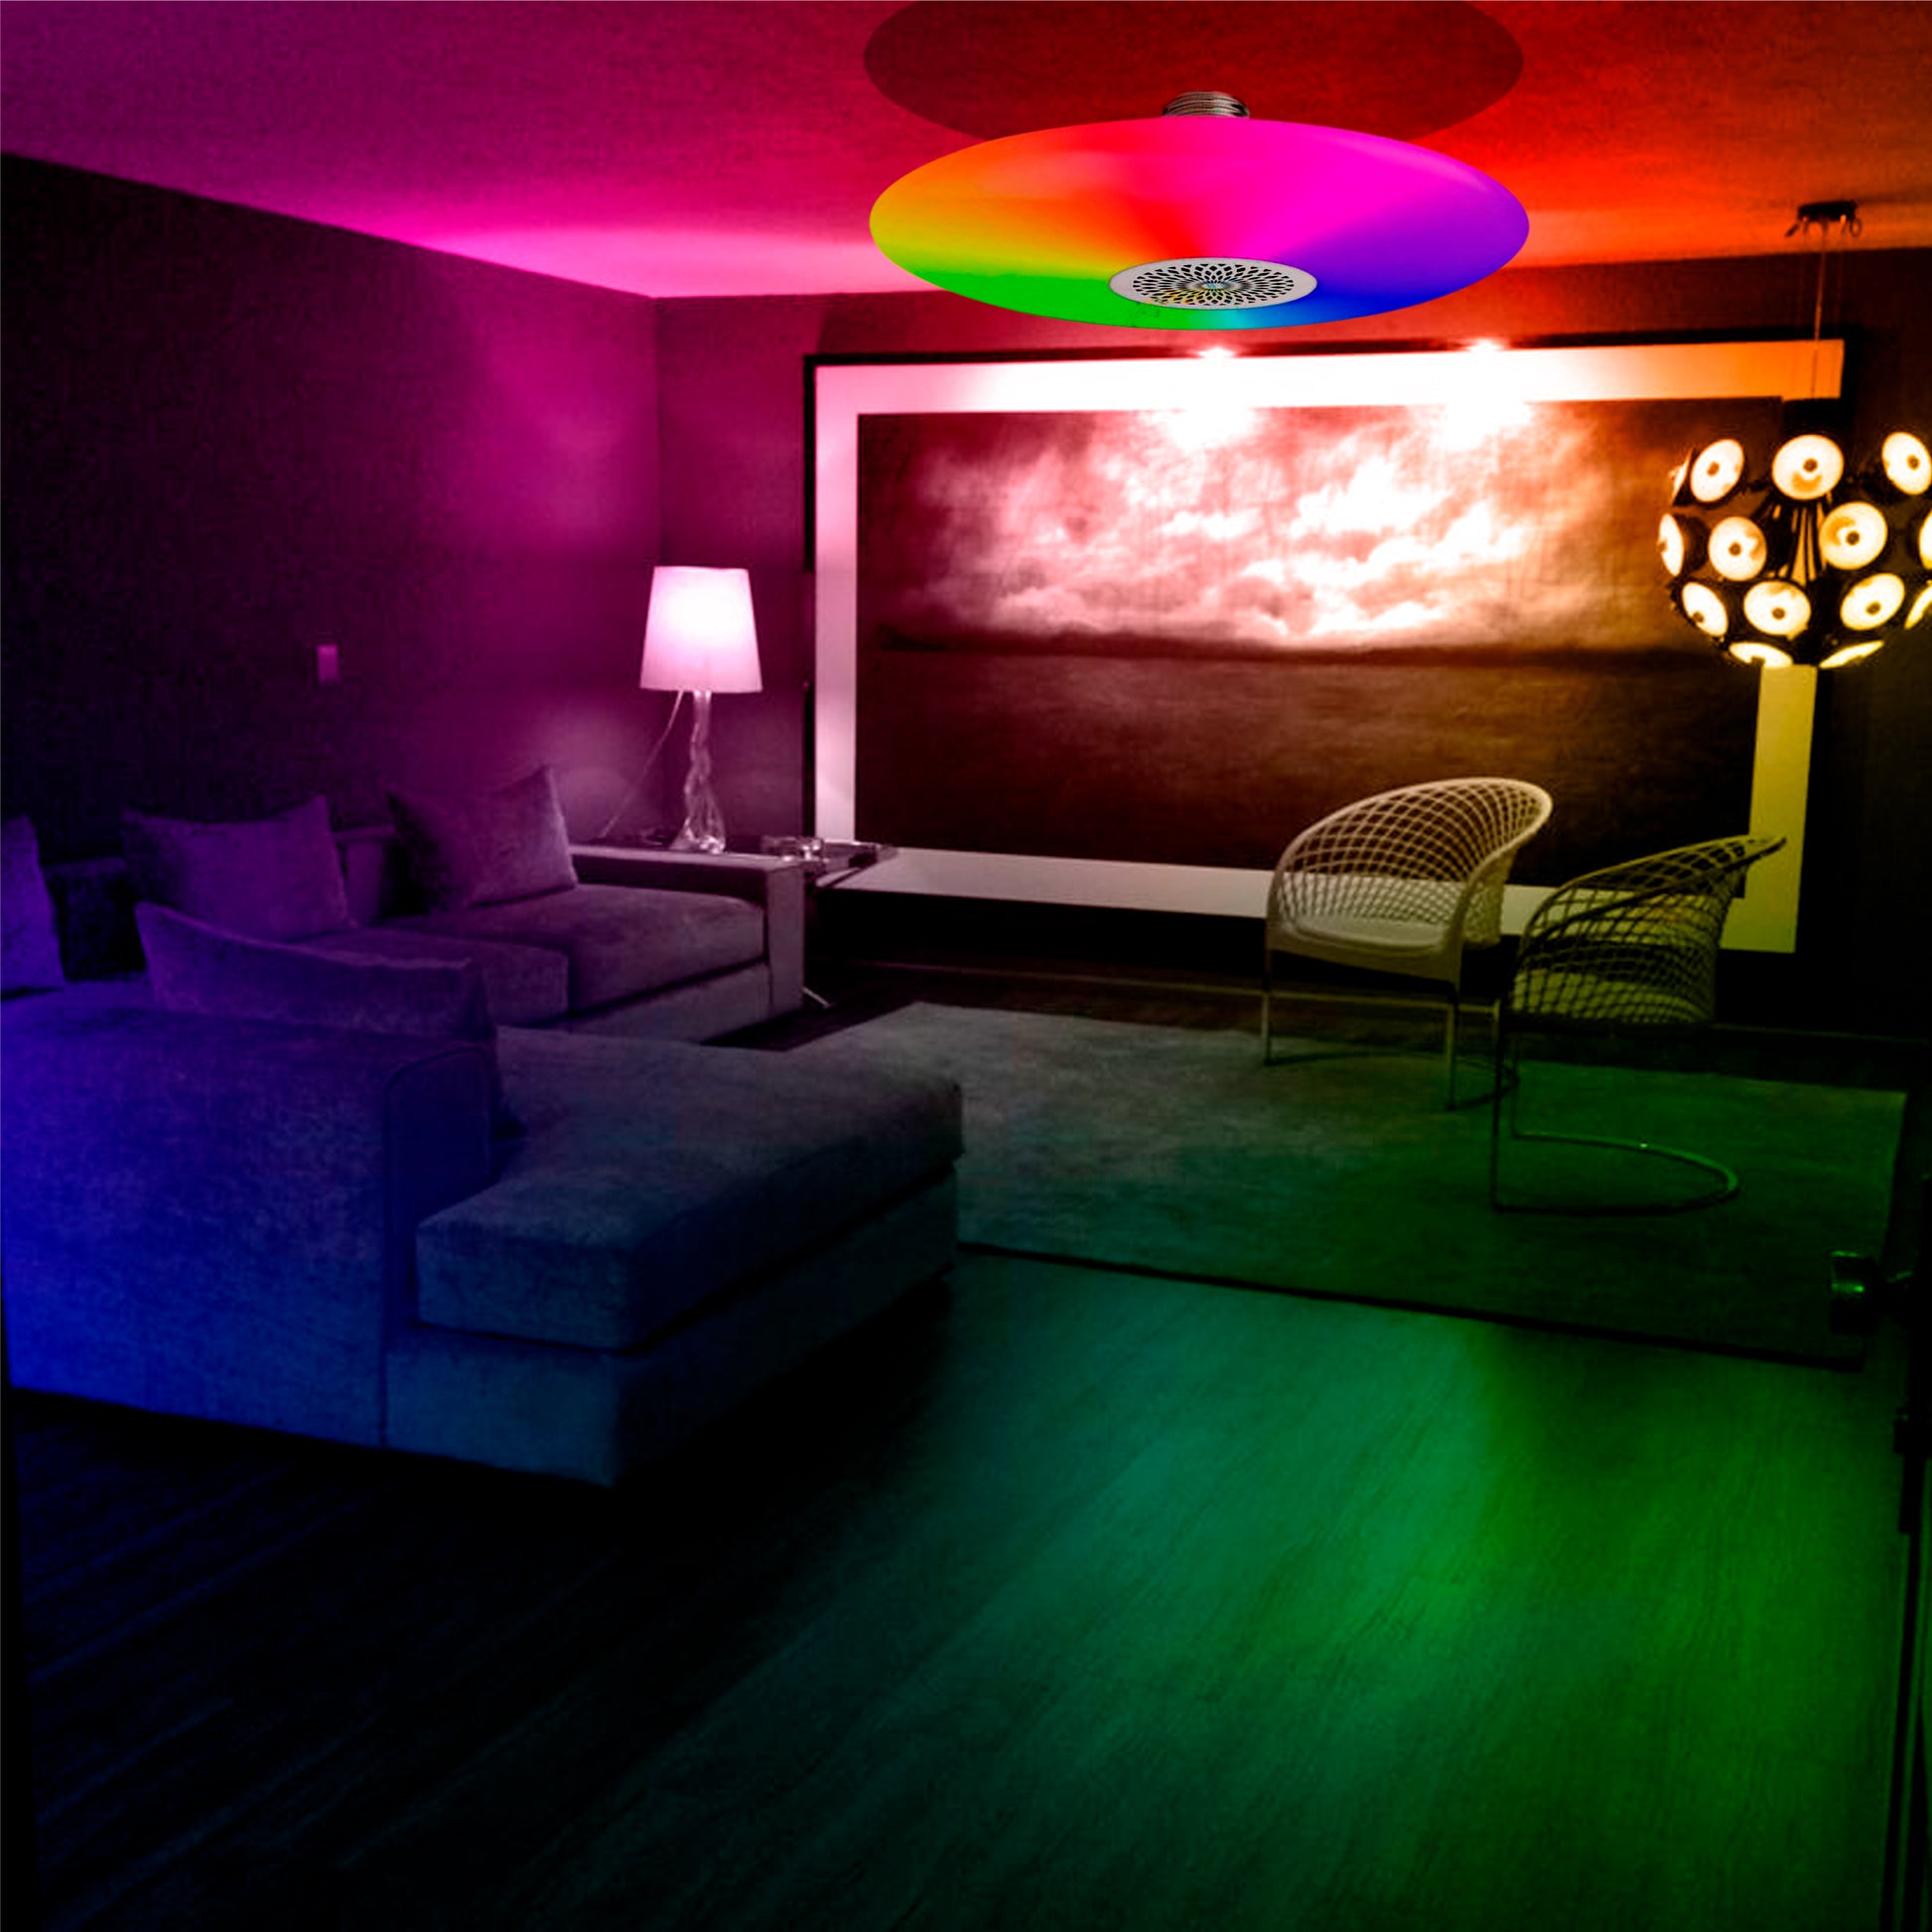 imagen representativa. el foco en un sala iluminando el habiente de colores 